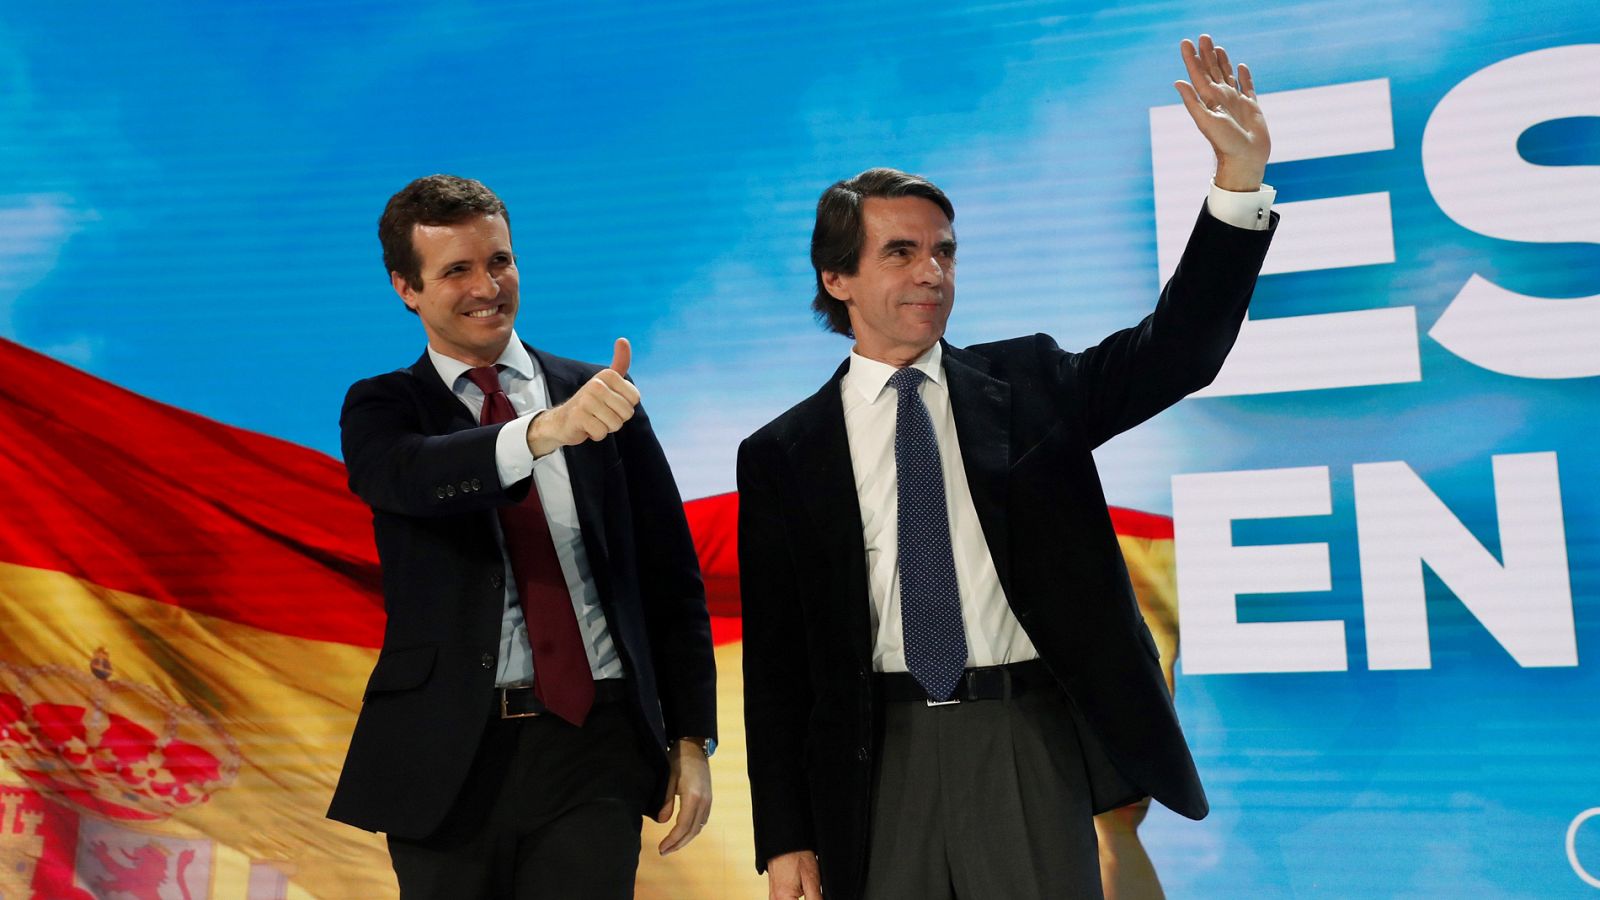 Convención PP: Aznar vuelve a pedir el voto para el PP tras su distanciamiento con la gestión de Rajoy - RTVE.es